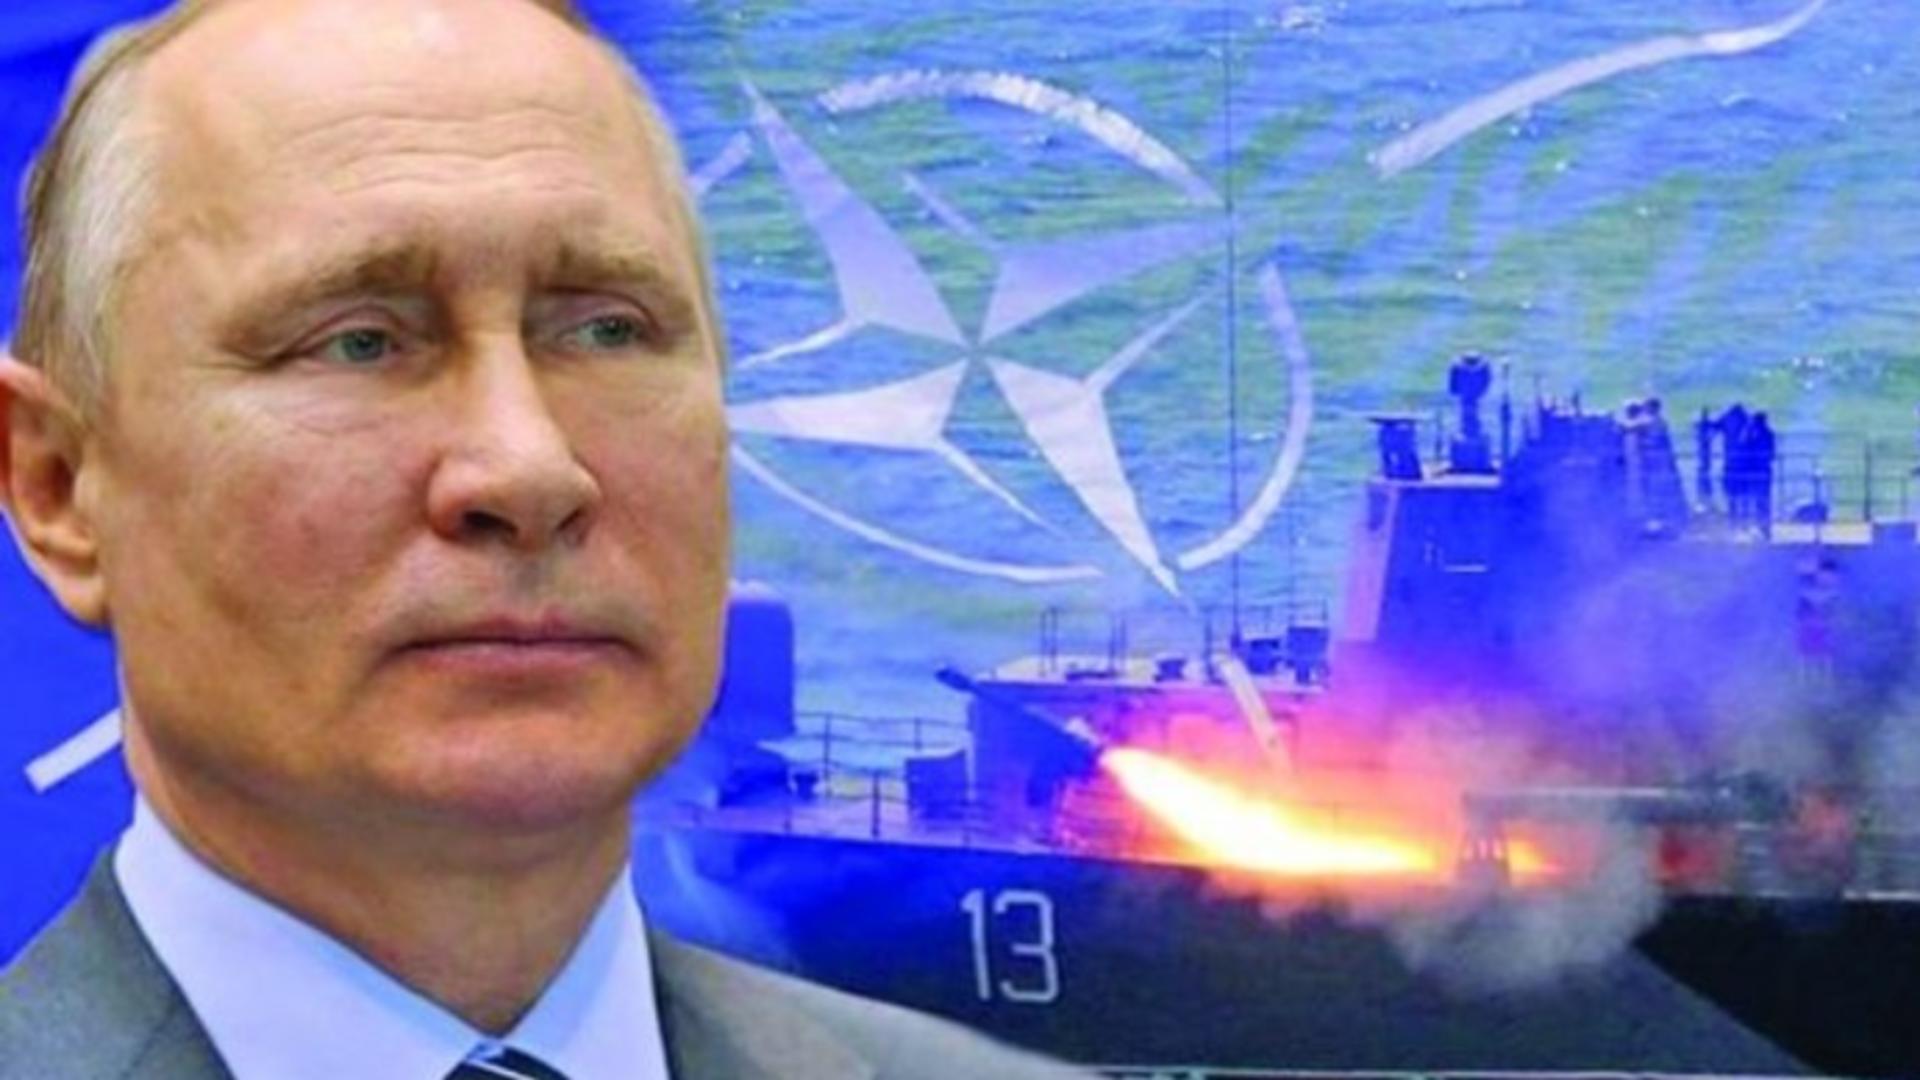 Vladimir Putin, încolțit de NATO - Decizie istorică pentru Ucraina în fața amenințării nucleare